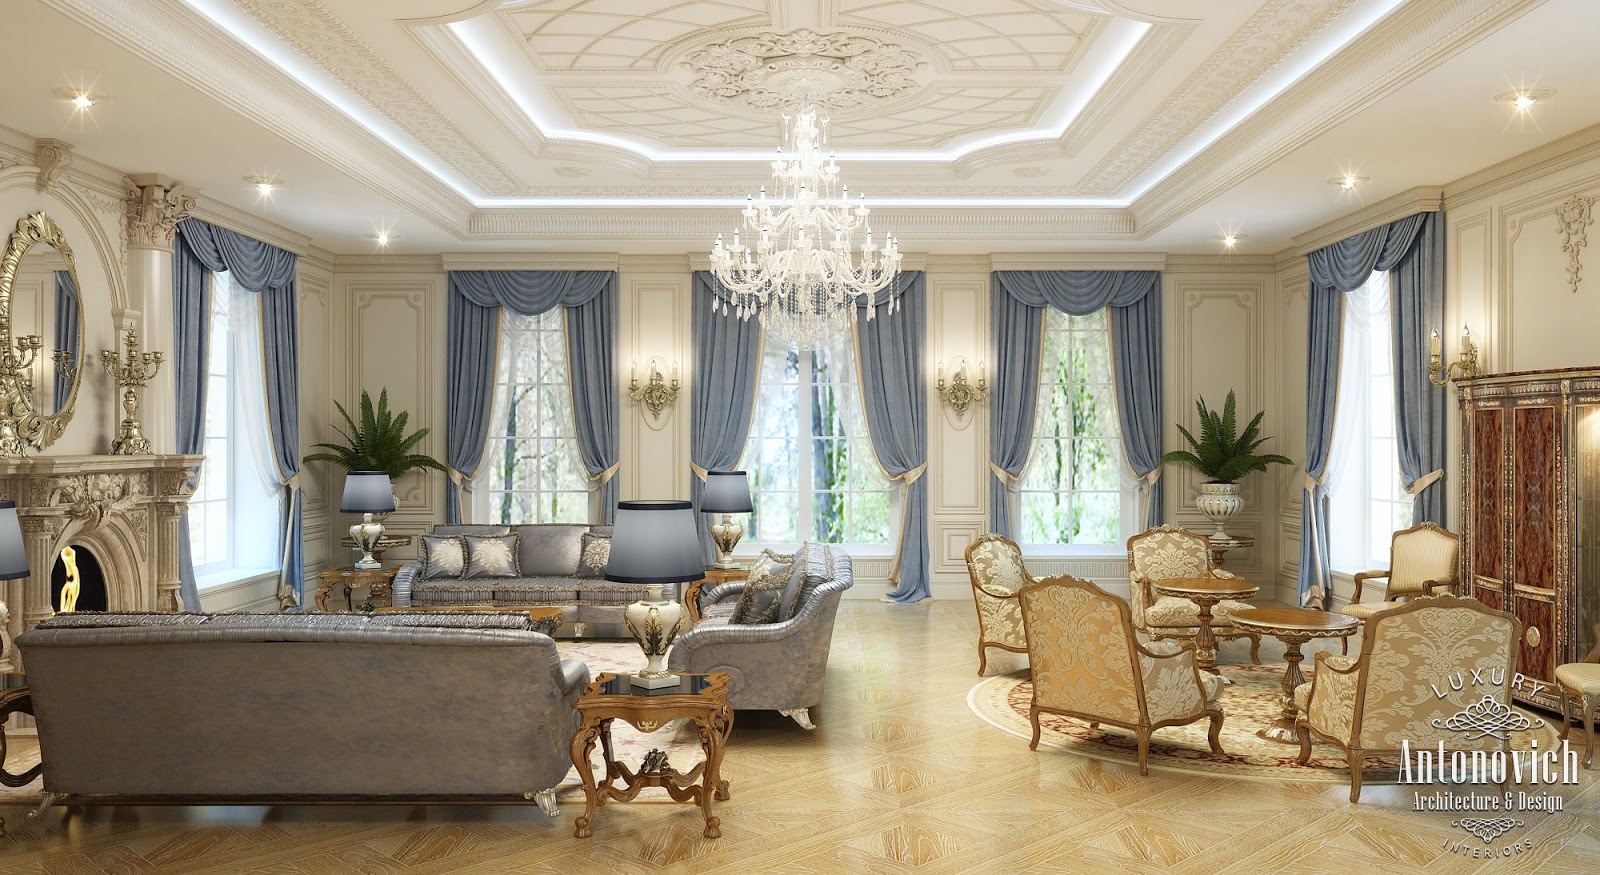 LUXURY ANTONOVICH DESIGN UAE: Villa Design in the UAE. Classical style ...